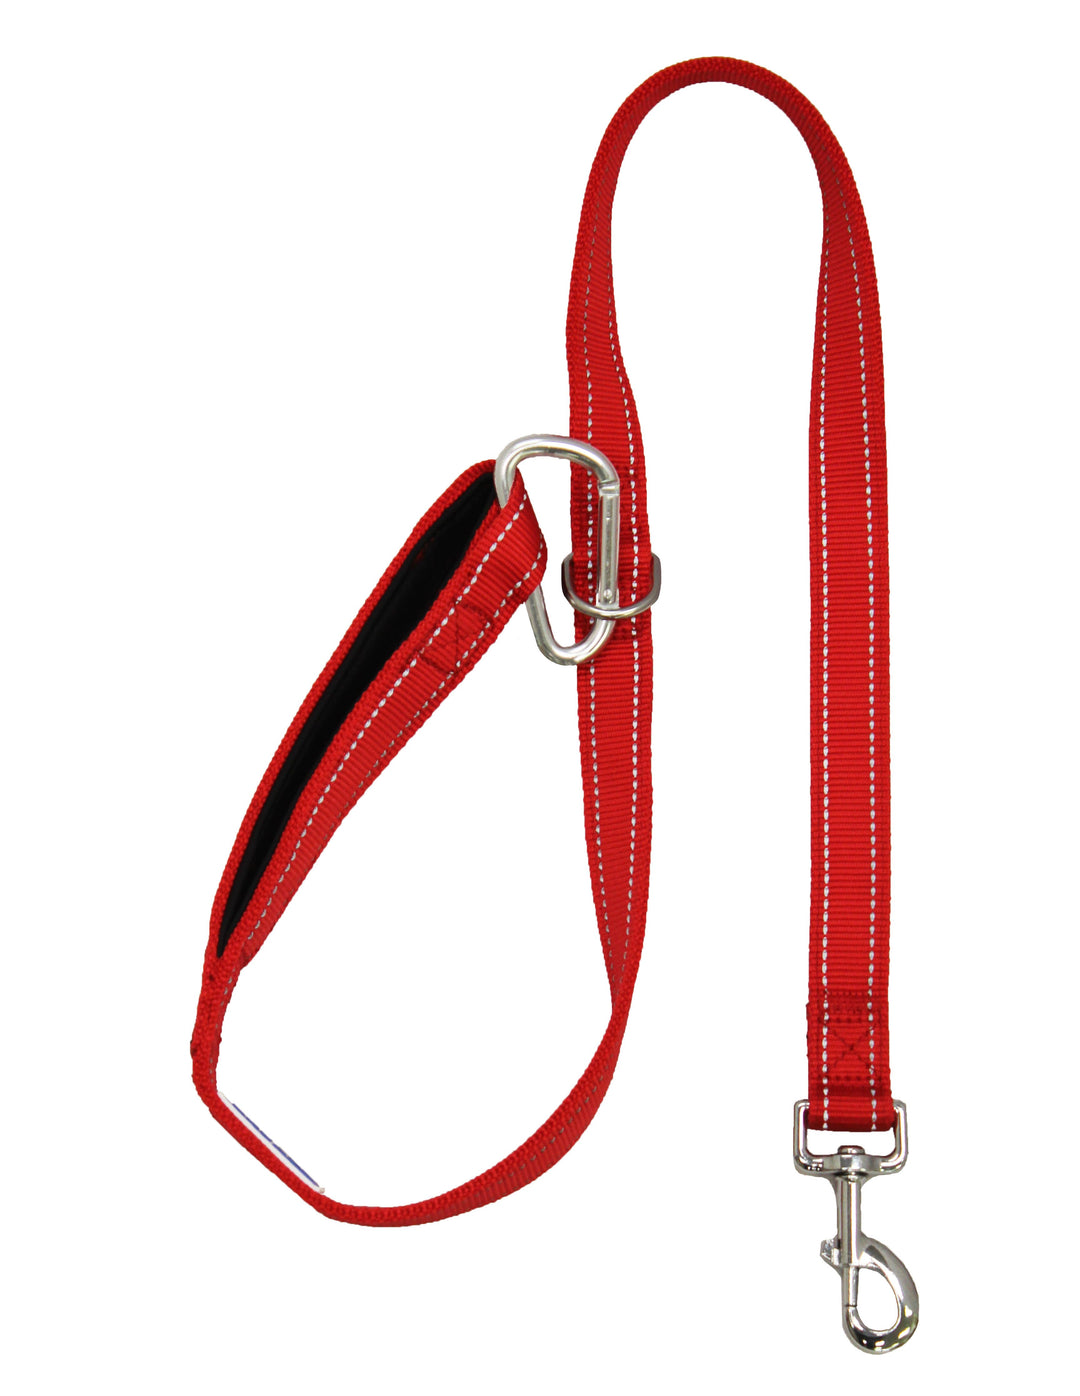 Hudson Bay Dog Leash | Clifford Red